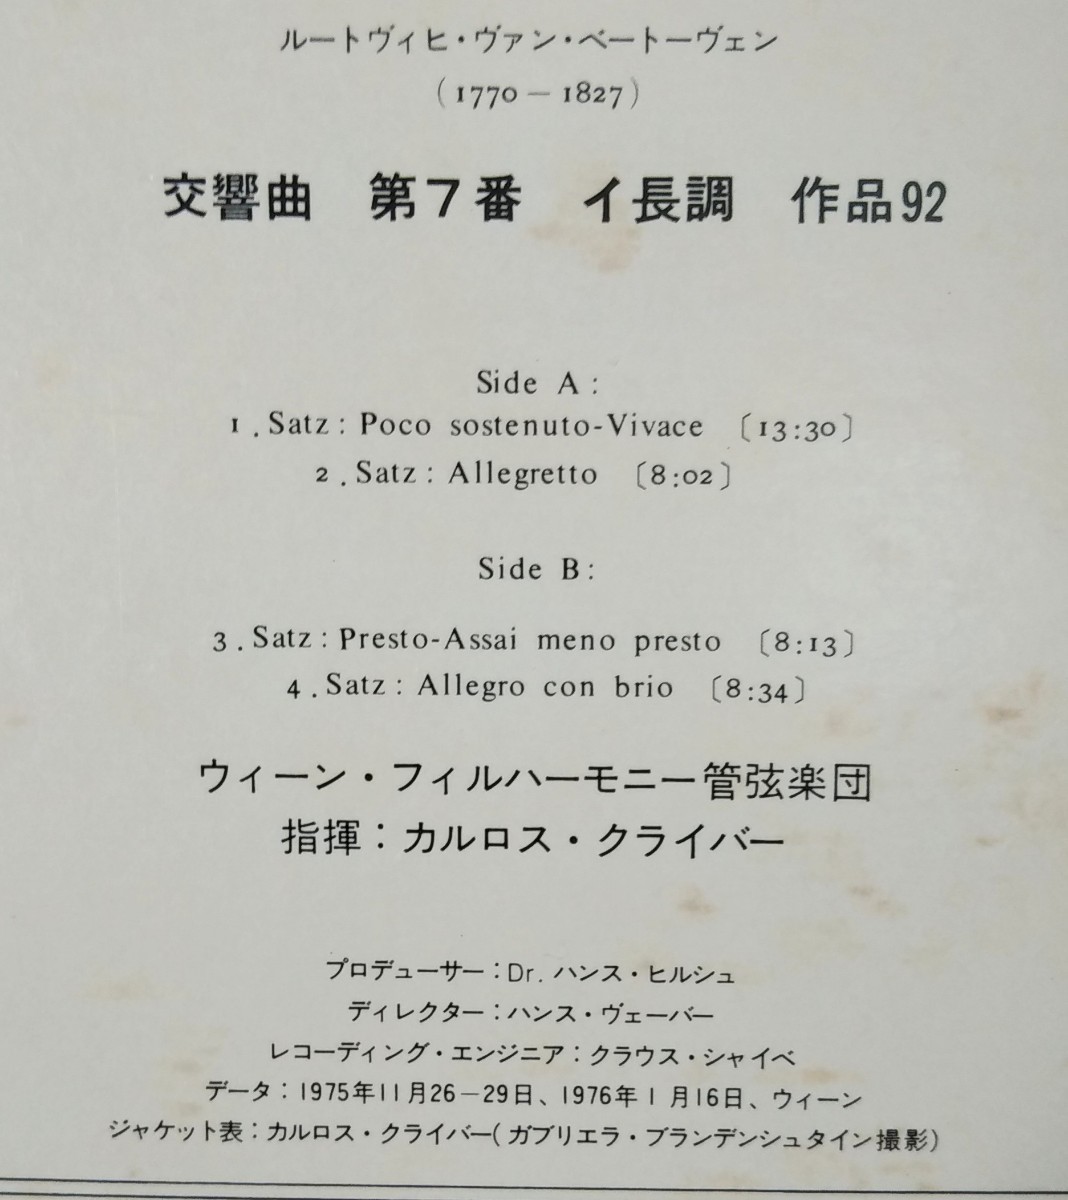 ベートーヴェン 交響曲7番 C.クライバー 国内盤 ウィーンフィル BEETHOVEN SYM.7 C.KLEIBER VIENA PHILHARMONIC ORCHESTRA 19756 LPの画像3